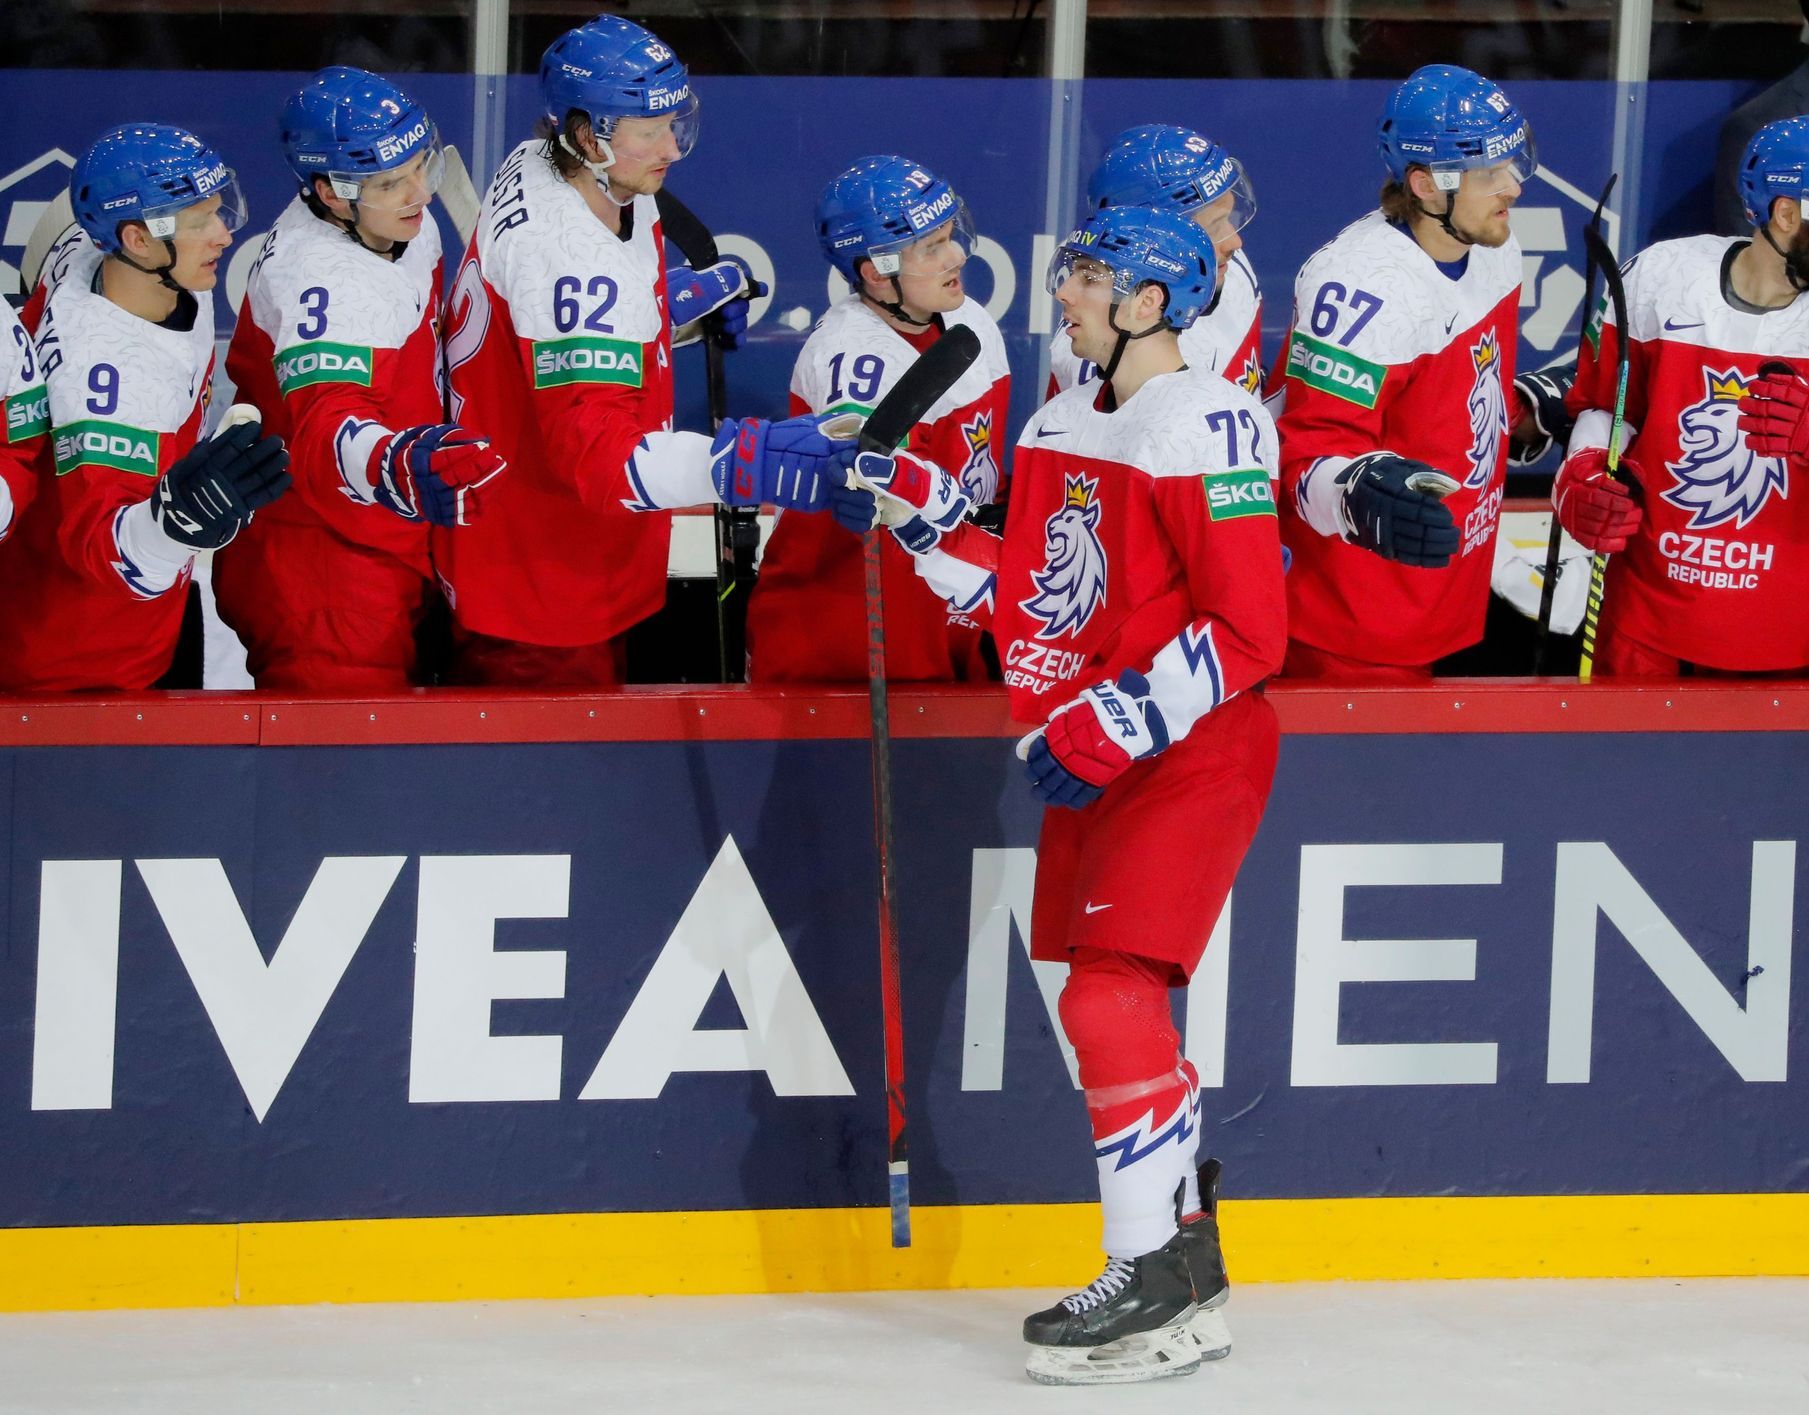 L’adversaire du joueur de hockey tchèque au Mondial sera l’Autriche, pas la Biélorussie éliminée